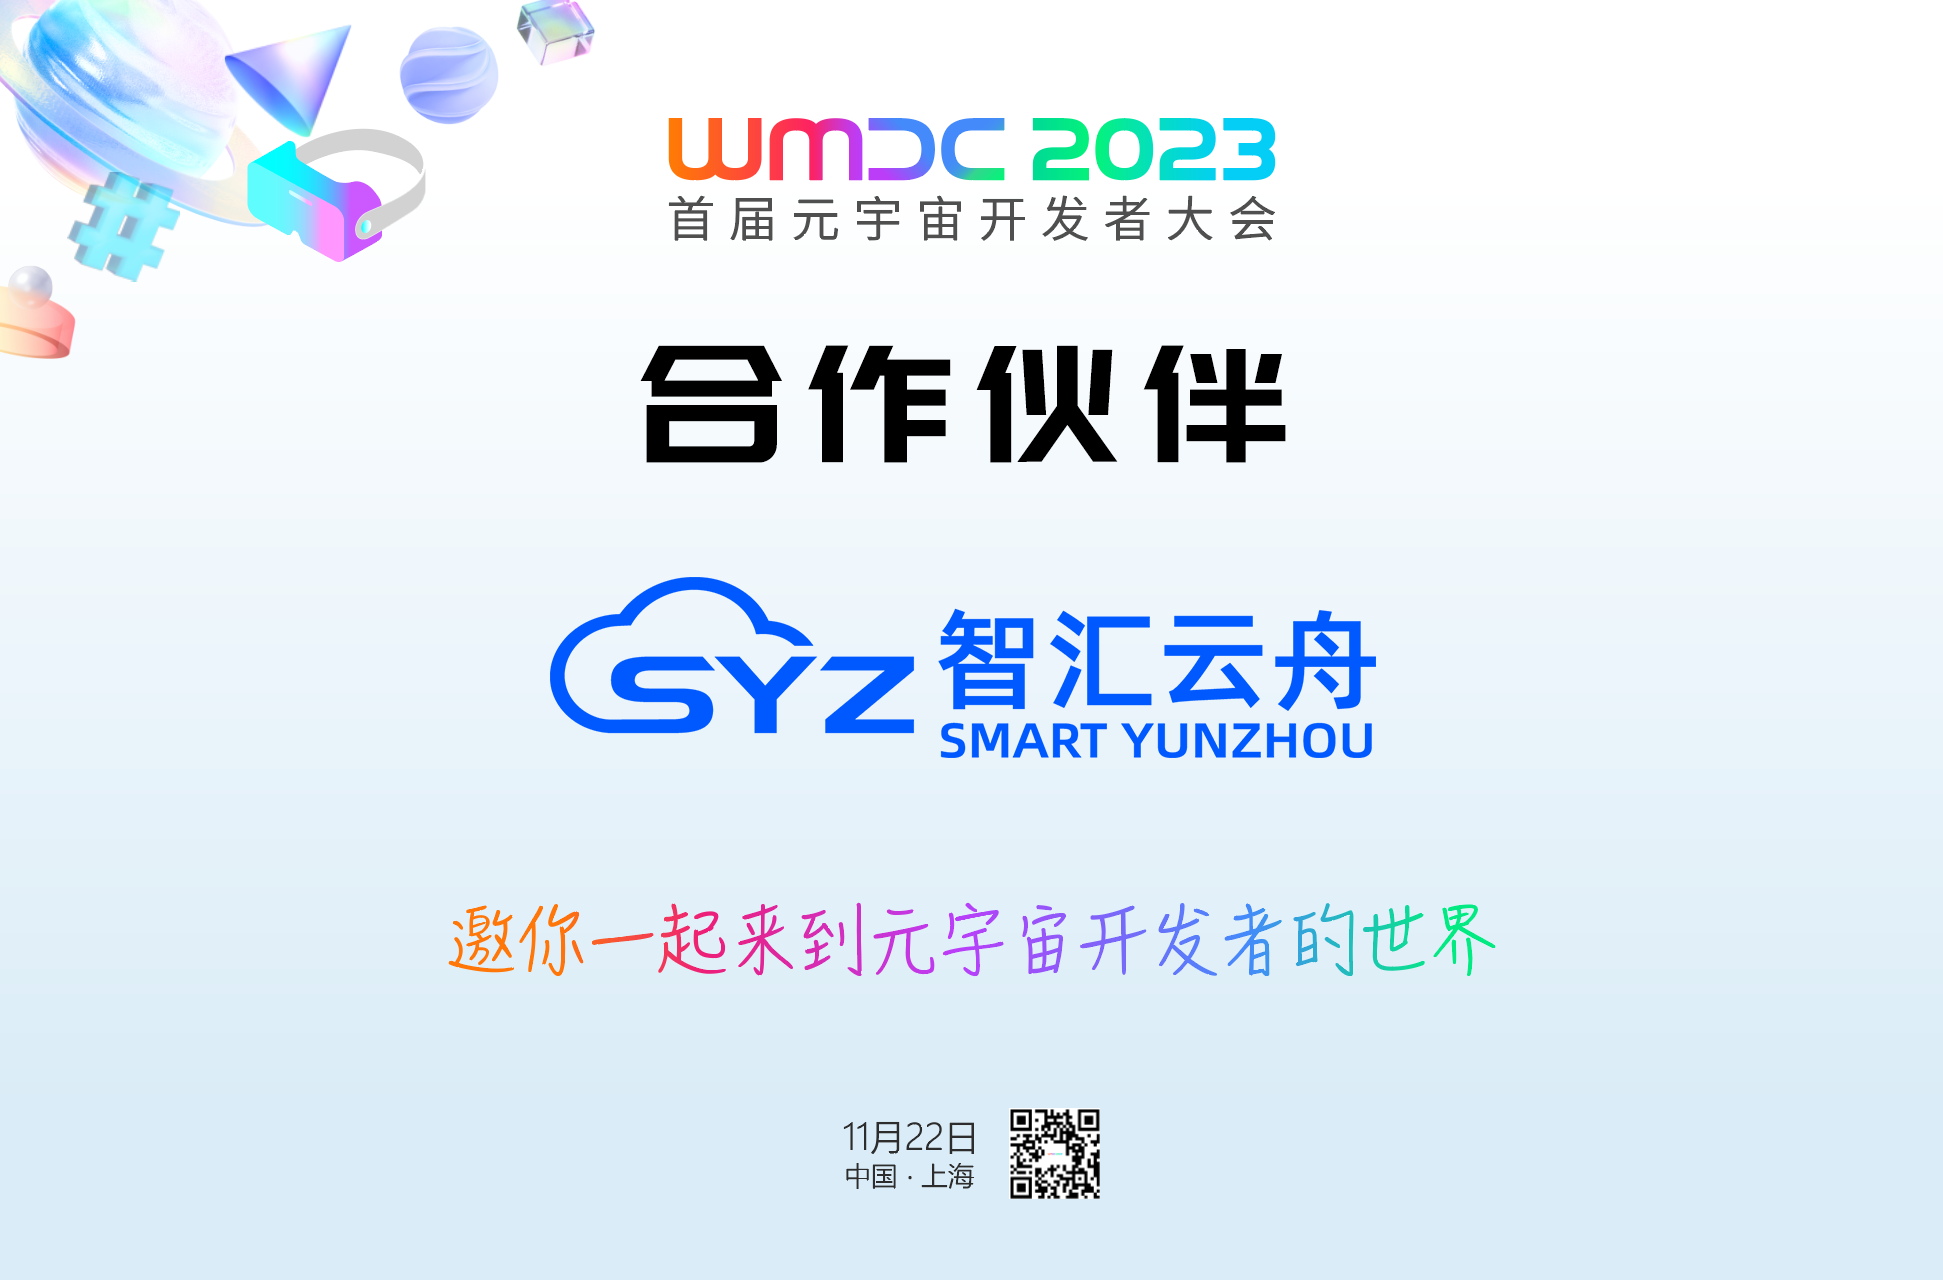 智汇云舟成为WMDC2023首届元宇宙开发者大会合作伙伴